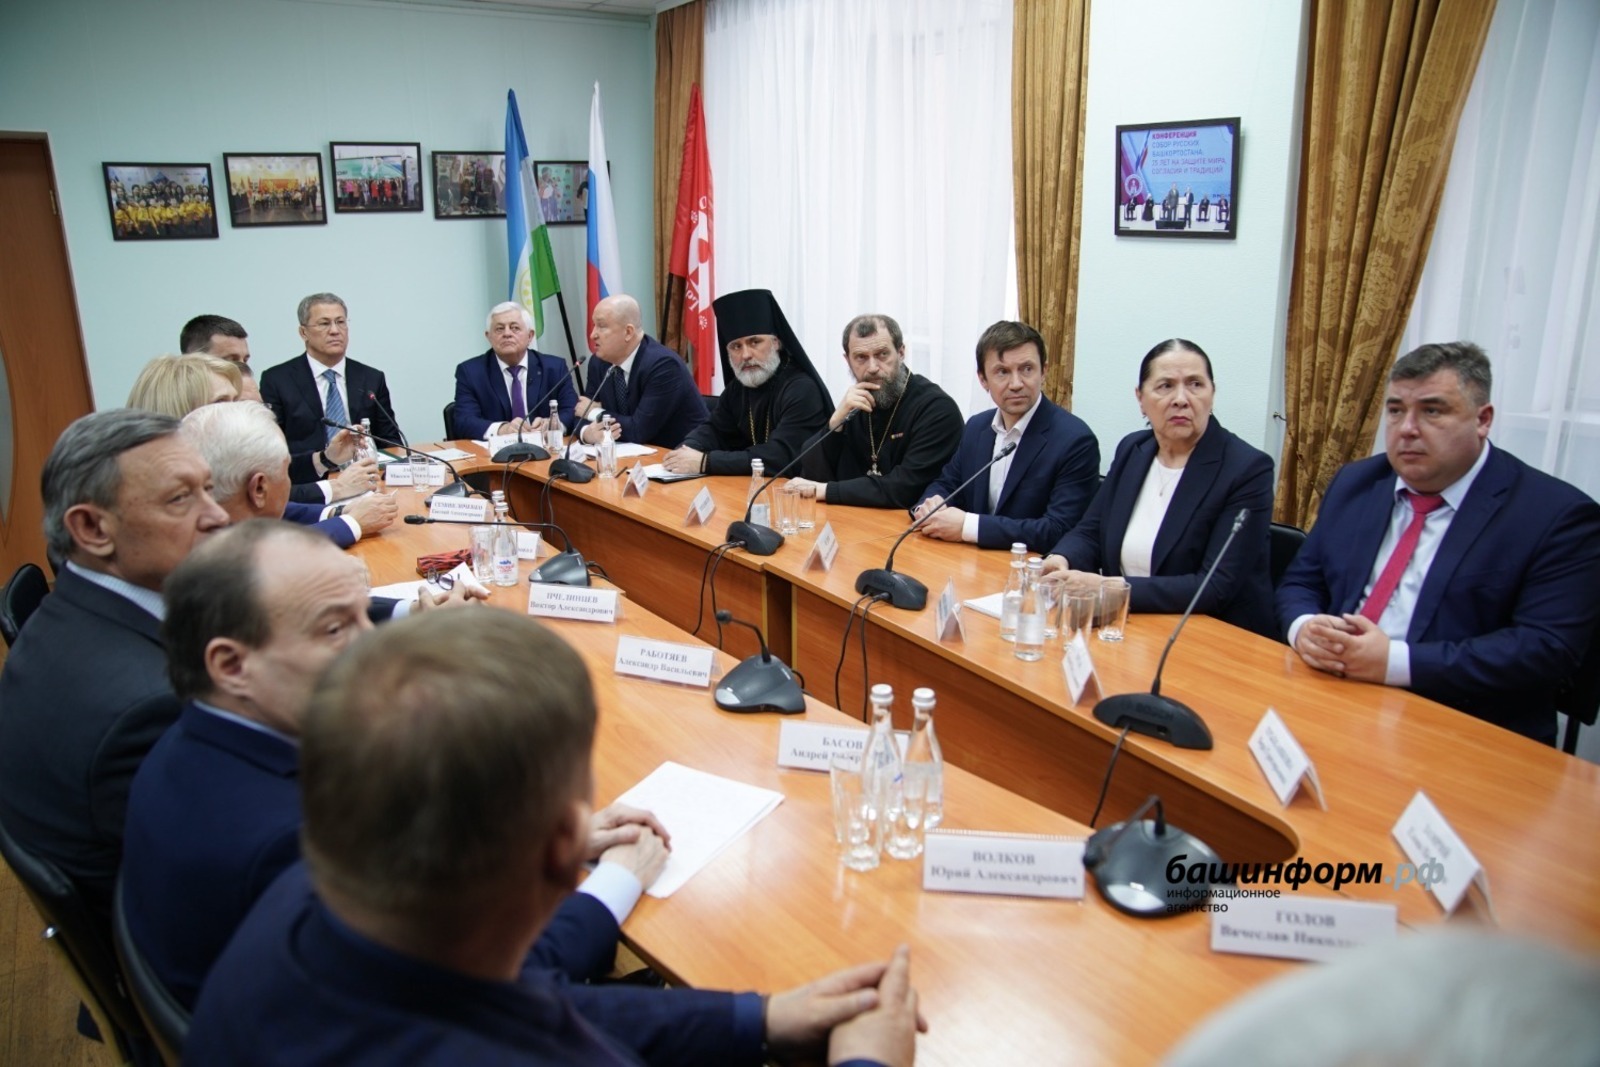 Глава Башкирии рассказал о межнациональном согласии в республике